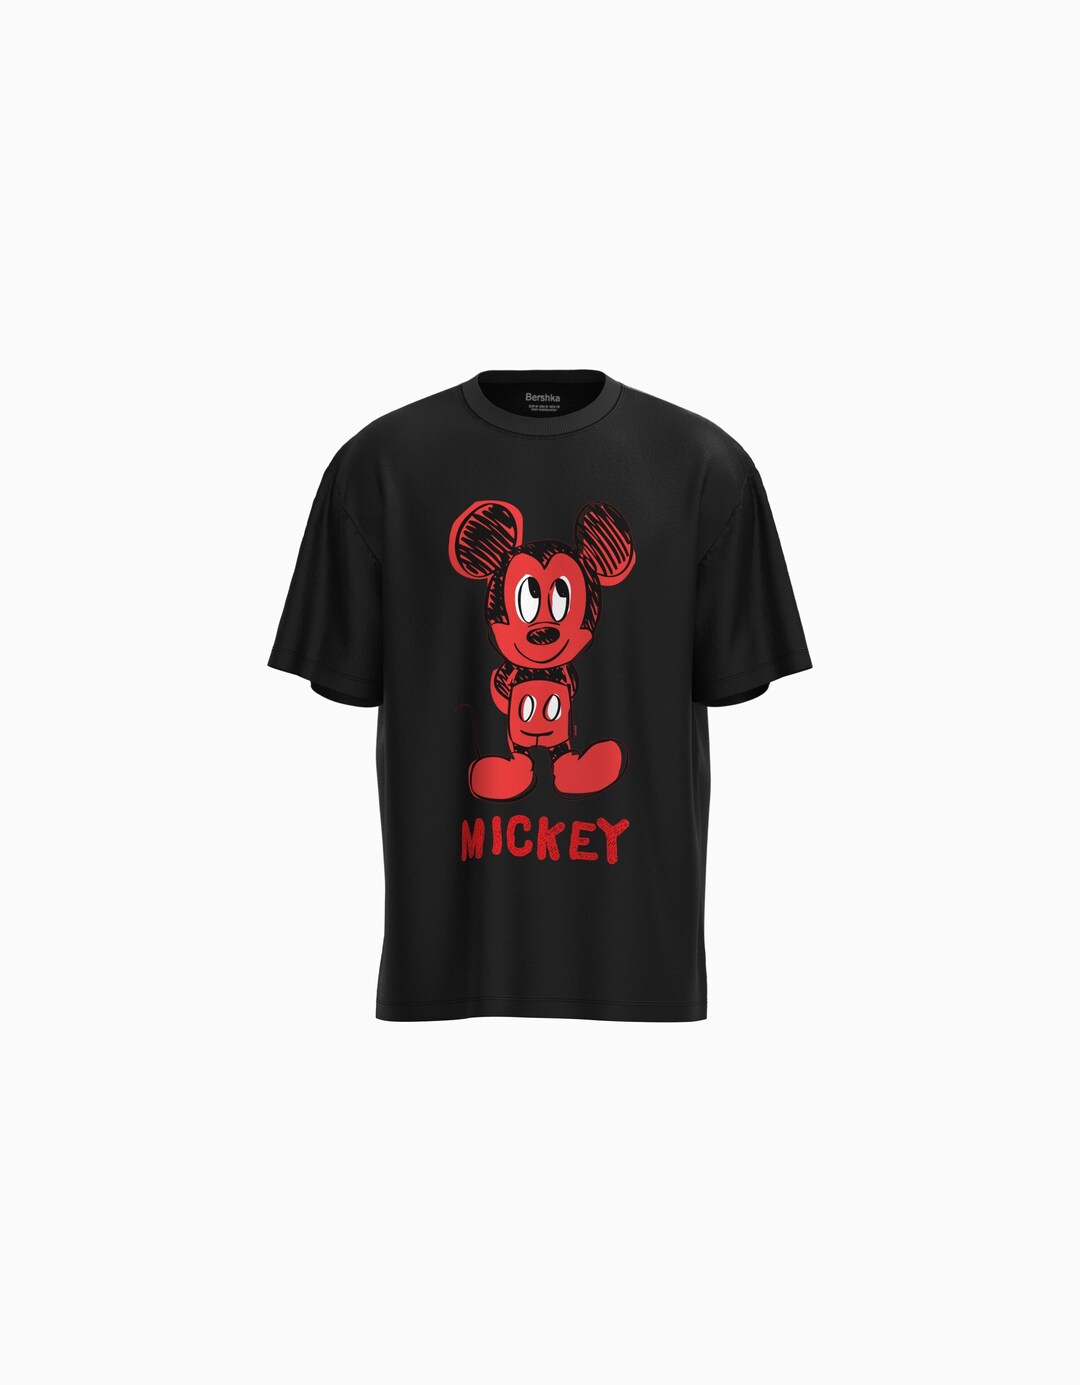 Camiseta Mickey manga corta boxy fit print